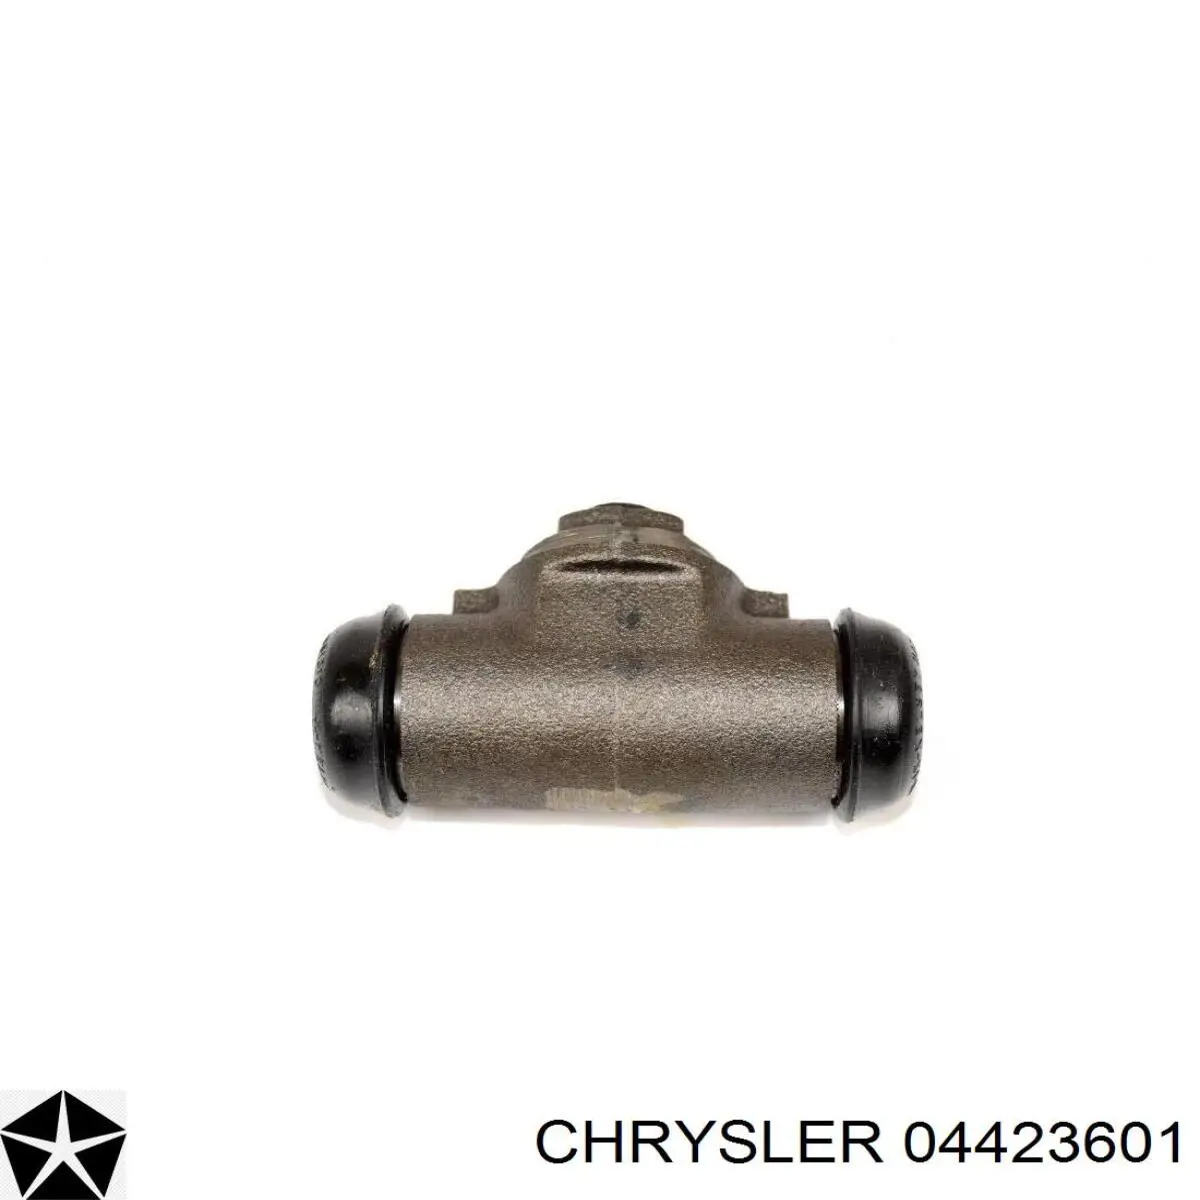 04423601 Chrysler цилиндр тормозной колесный рабочий задний